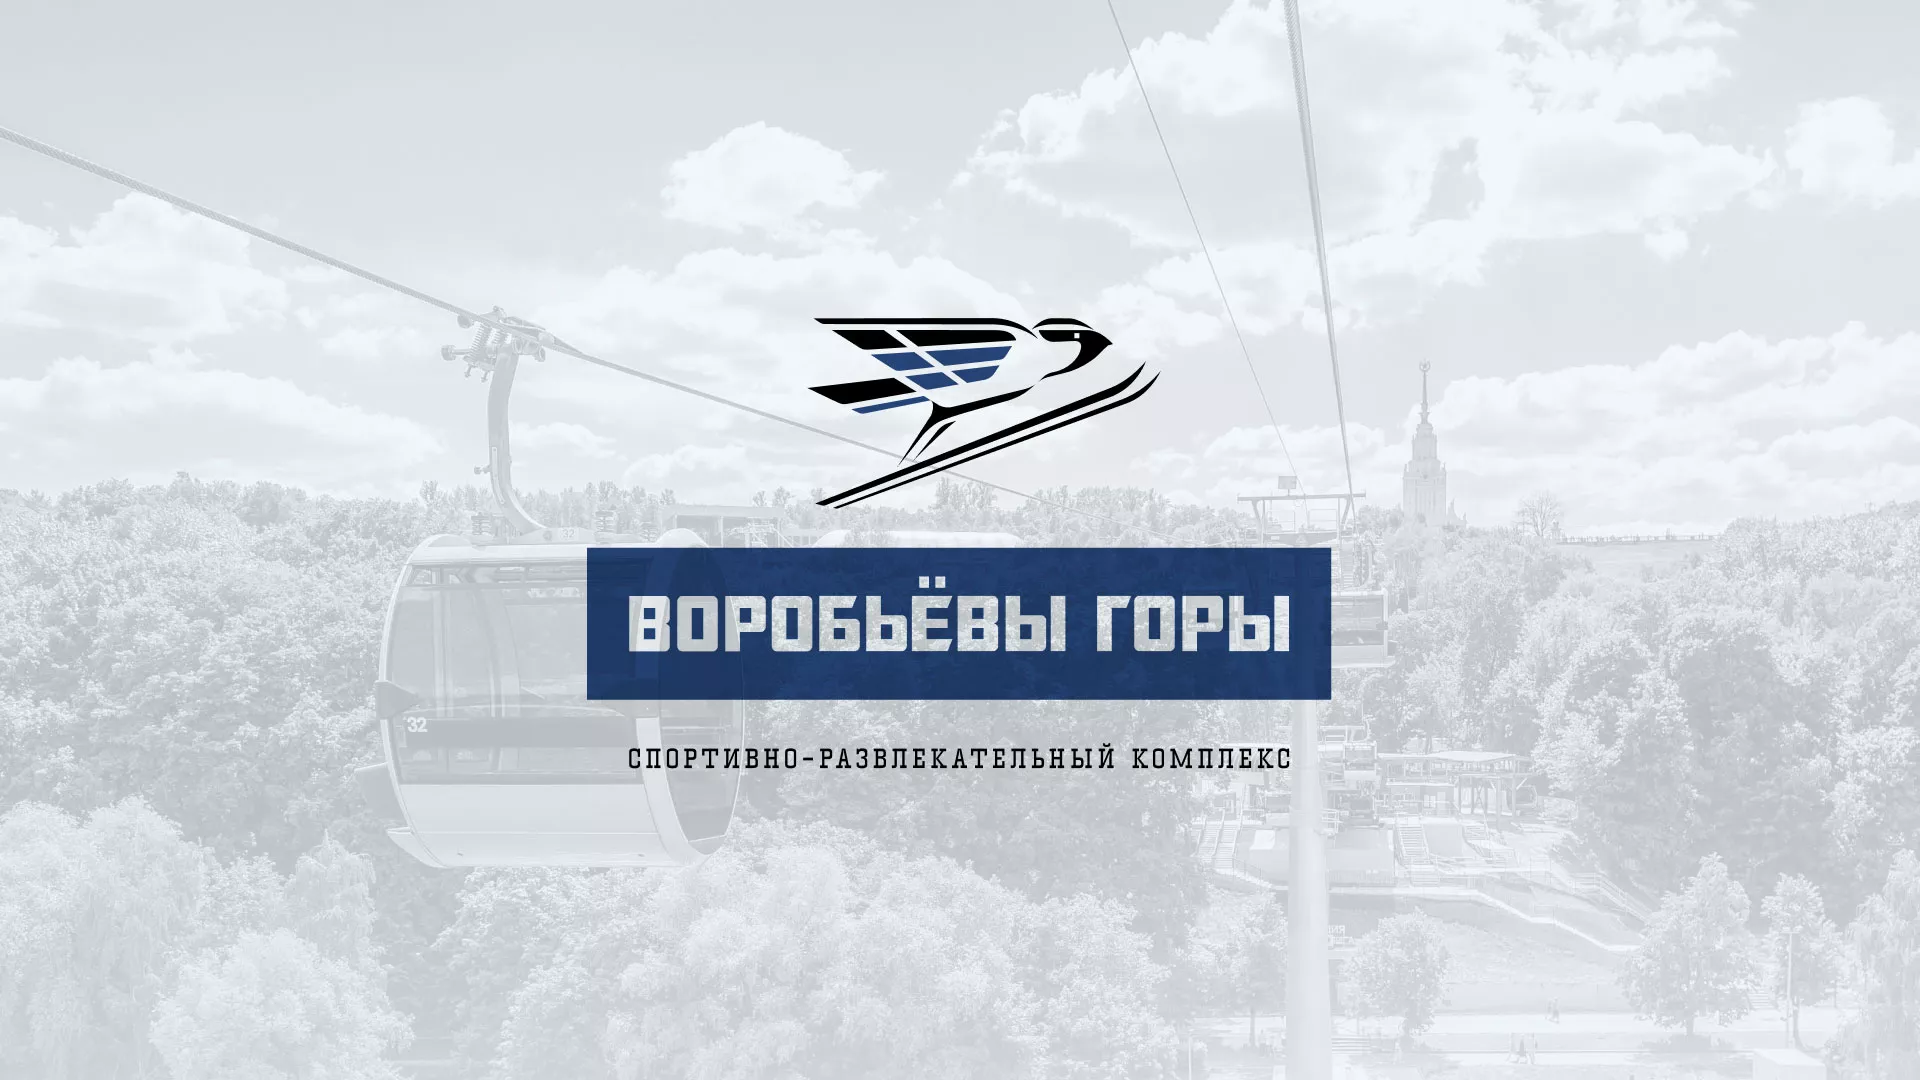 Разработка сайта в Азнакаево для спортивно-развлекательного комплекса «Воробьёвы горы»